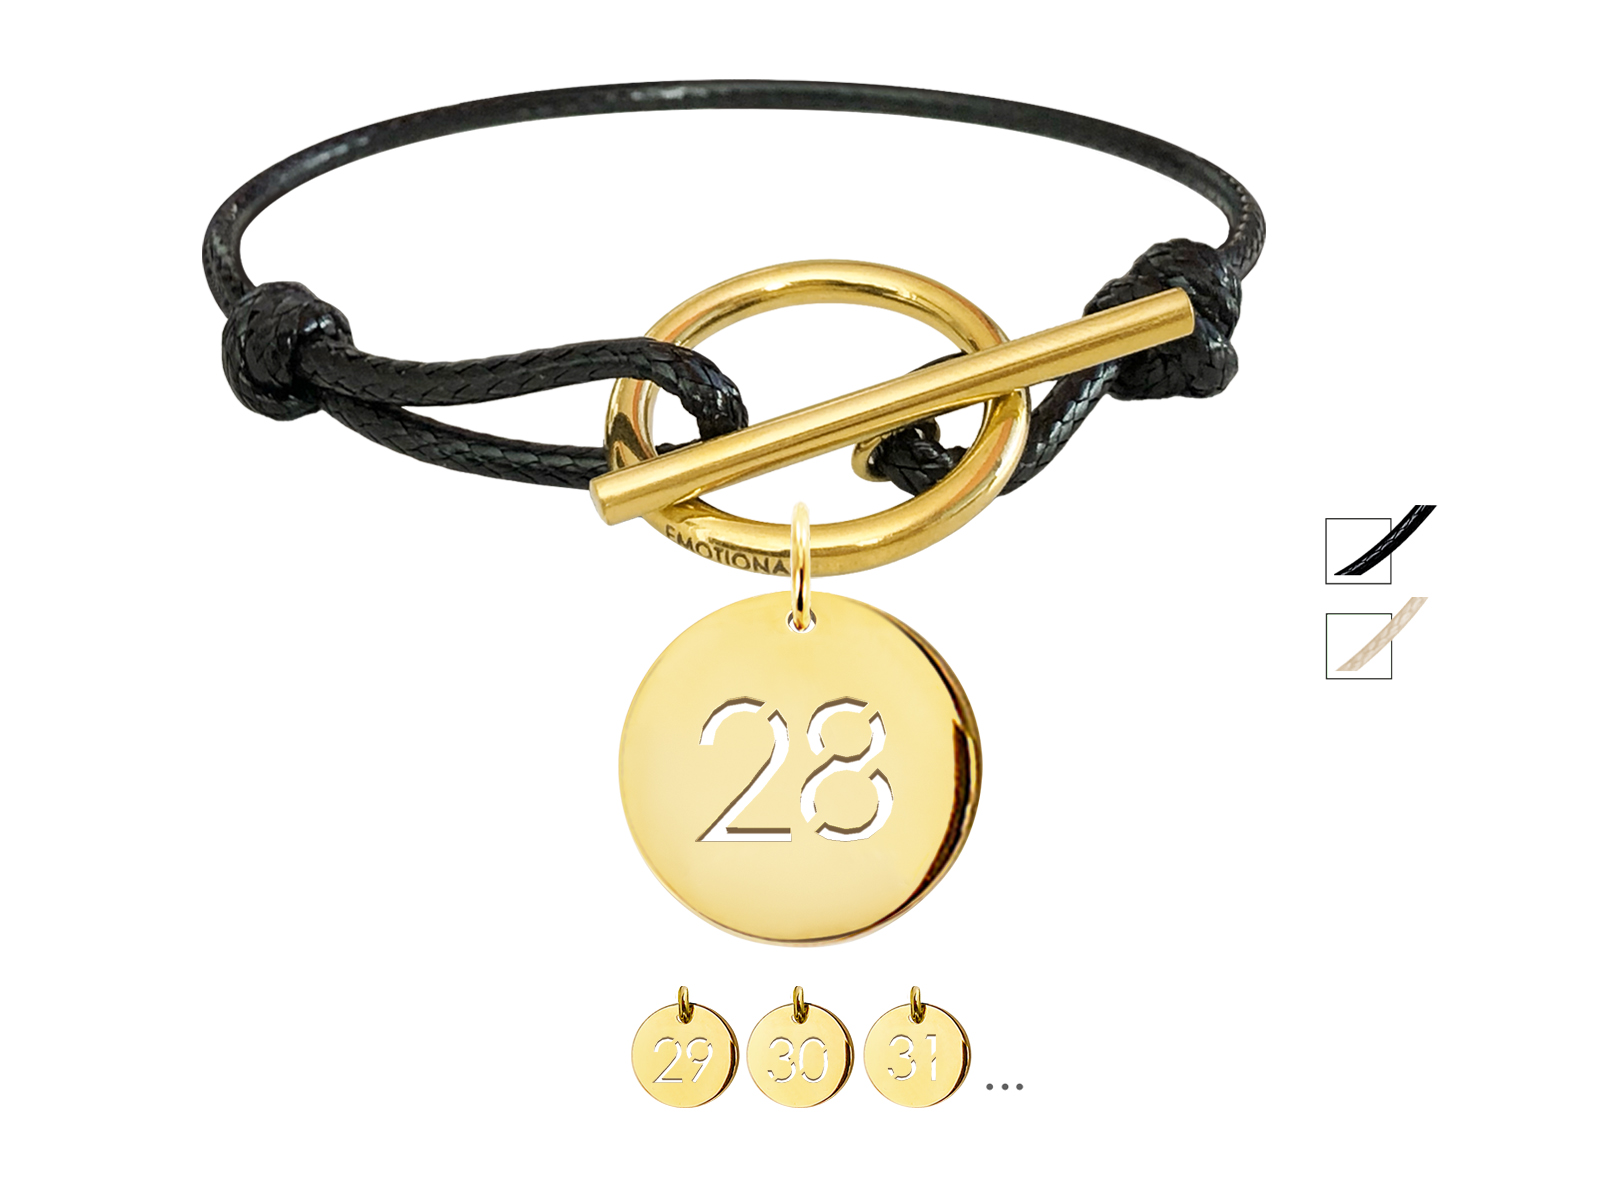 Bracelet cordon ajustable noir avec fermoir T agrémenté d'une pampille numéro découpé en acier inoxydable doré